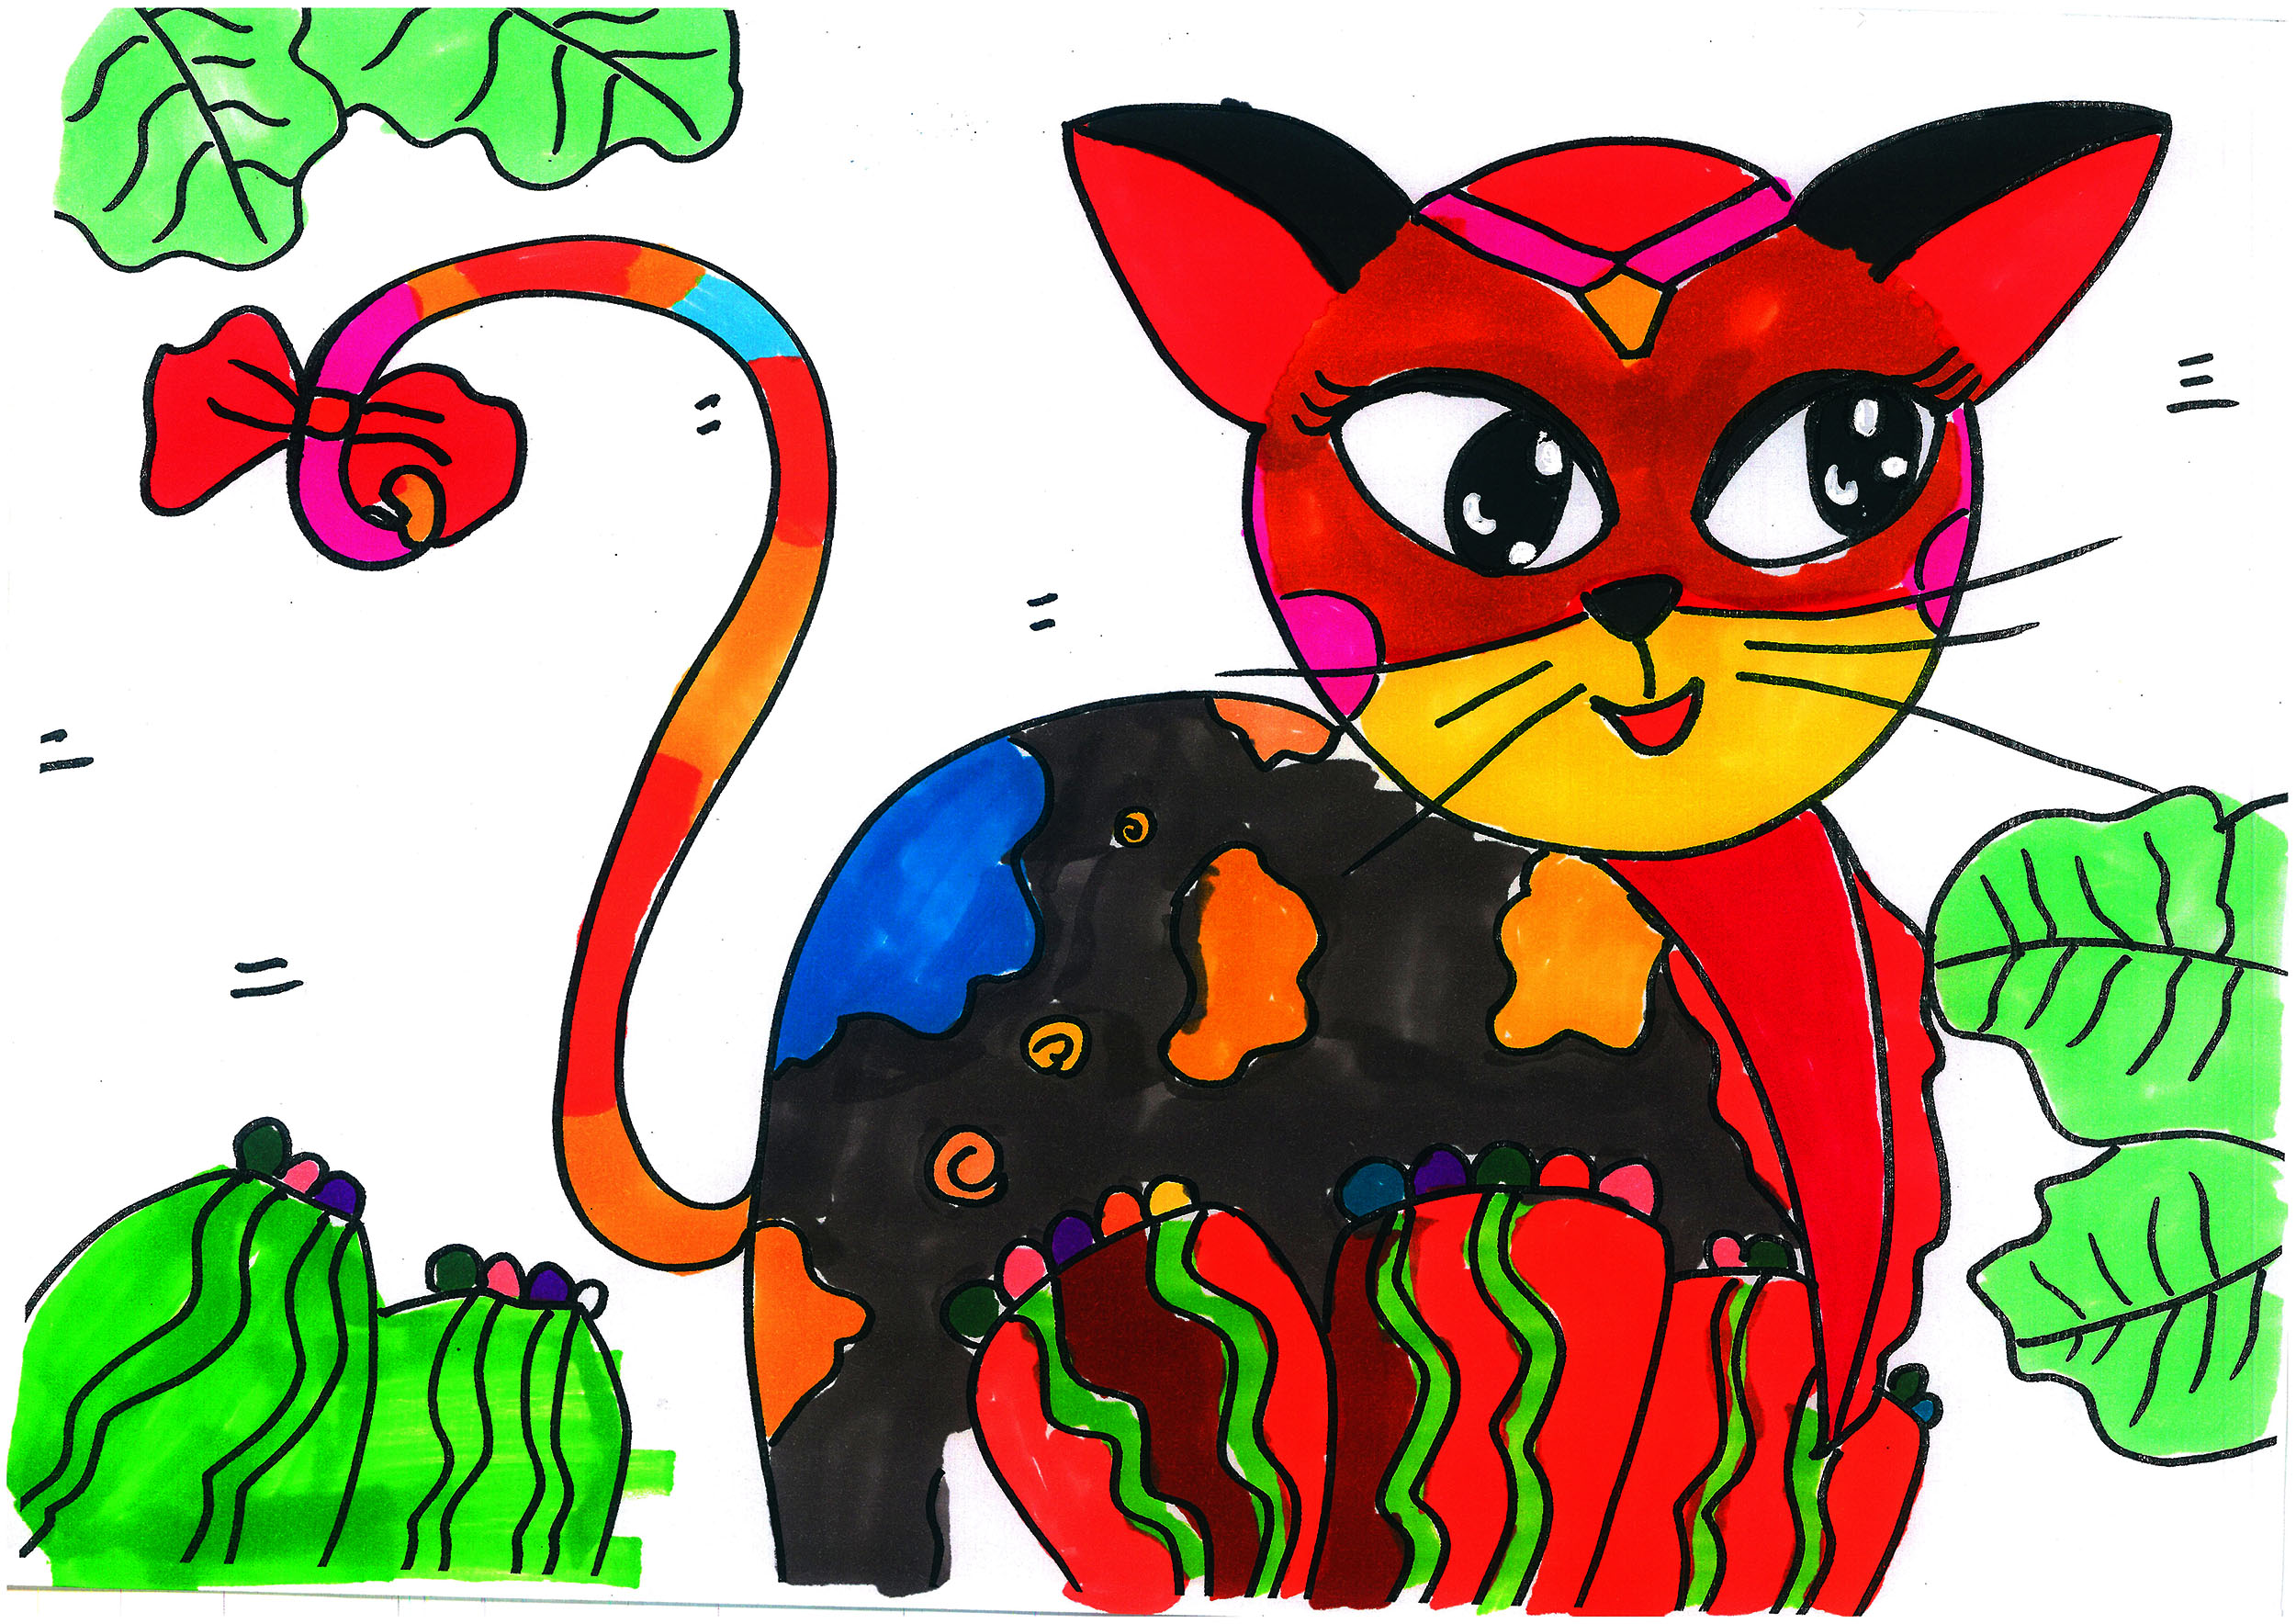 6岁可打印课程图片 可爱小老虎的故事画画作品大全